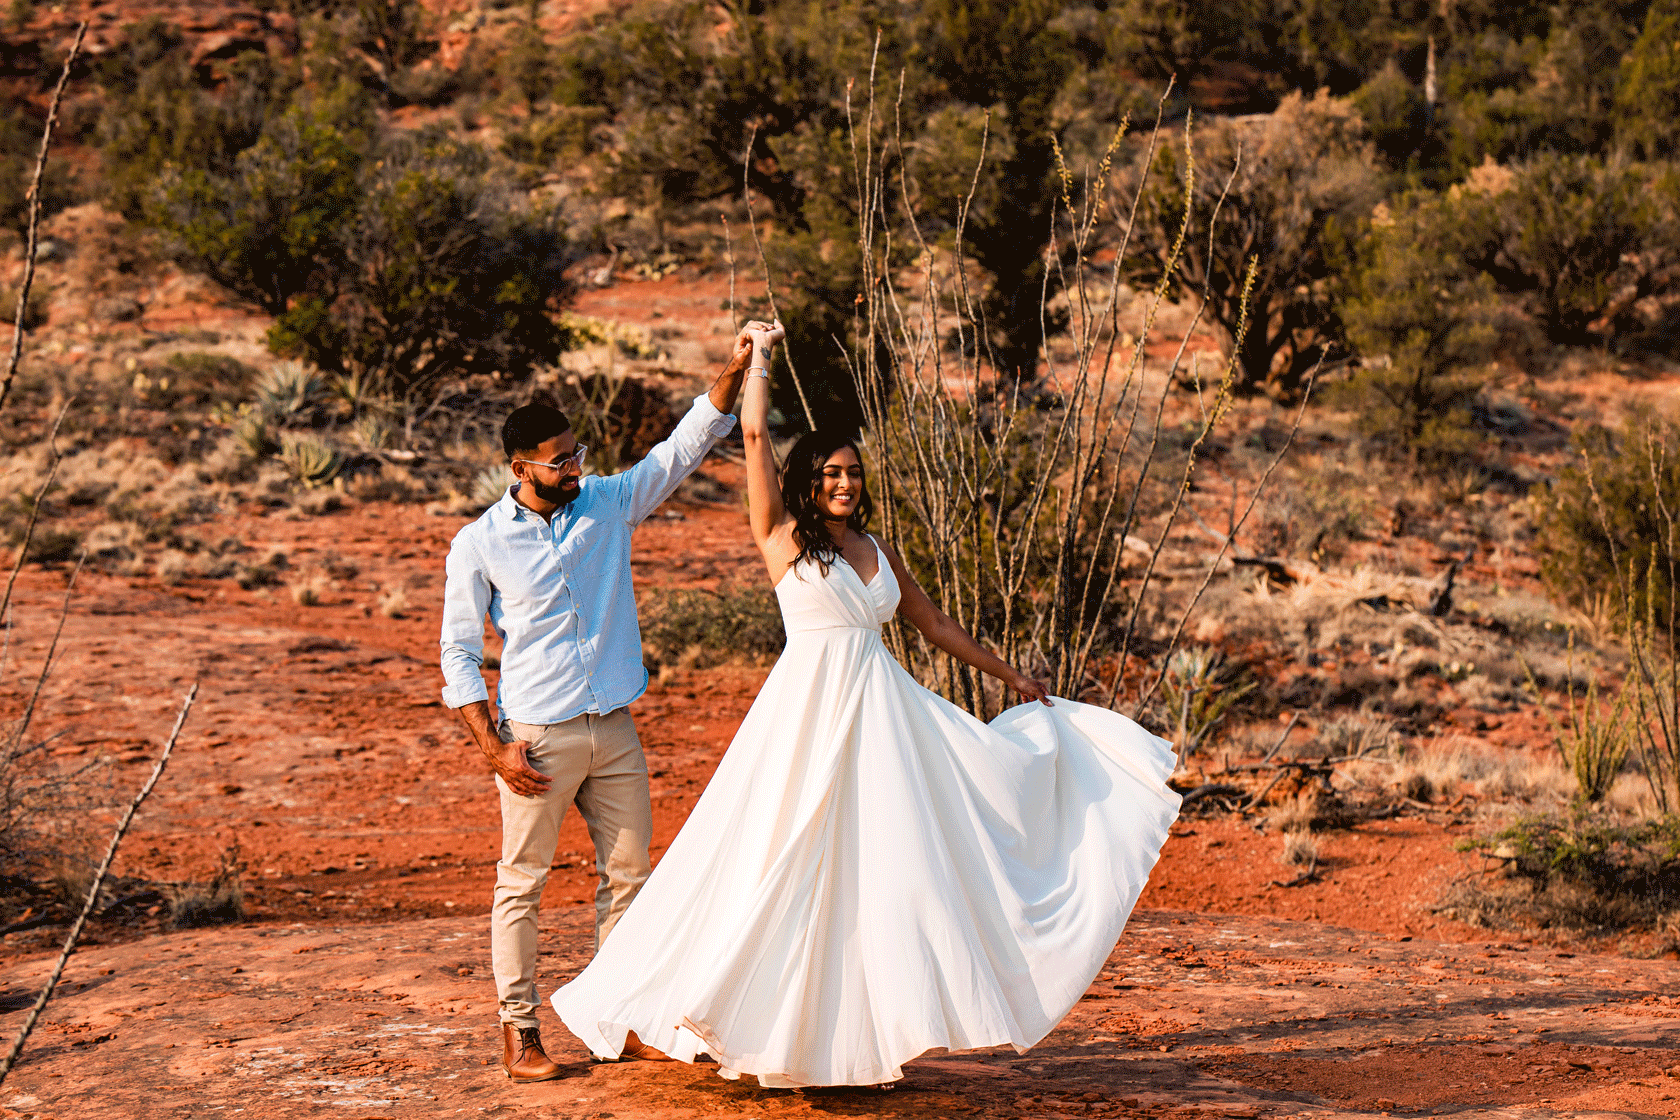 Engagement session in Sedona, Arizona.